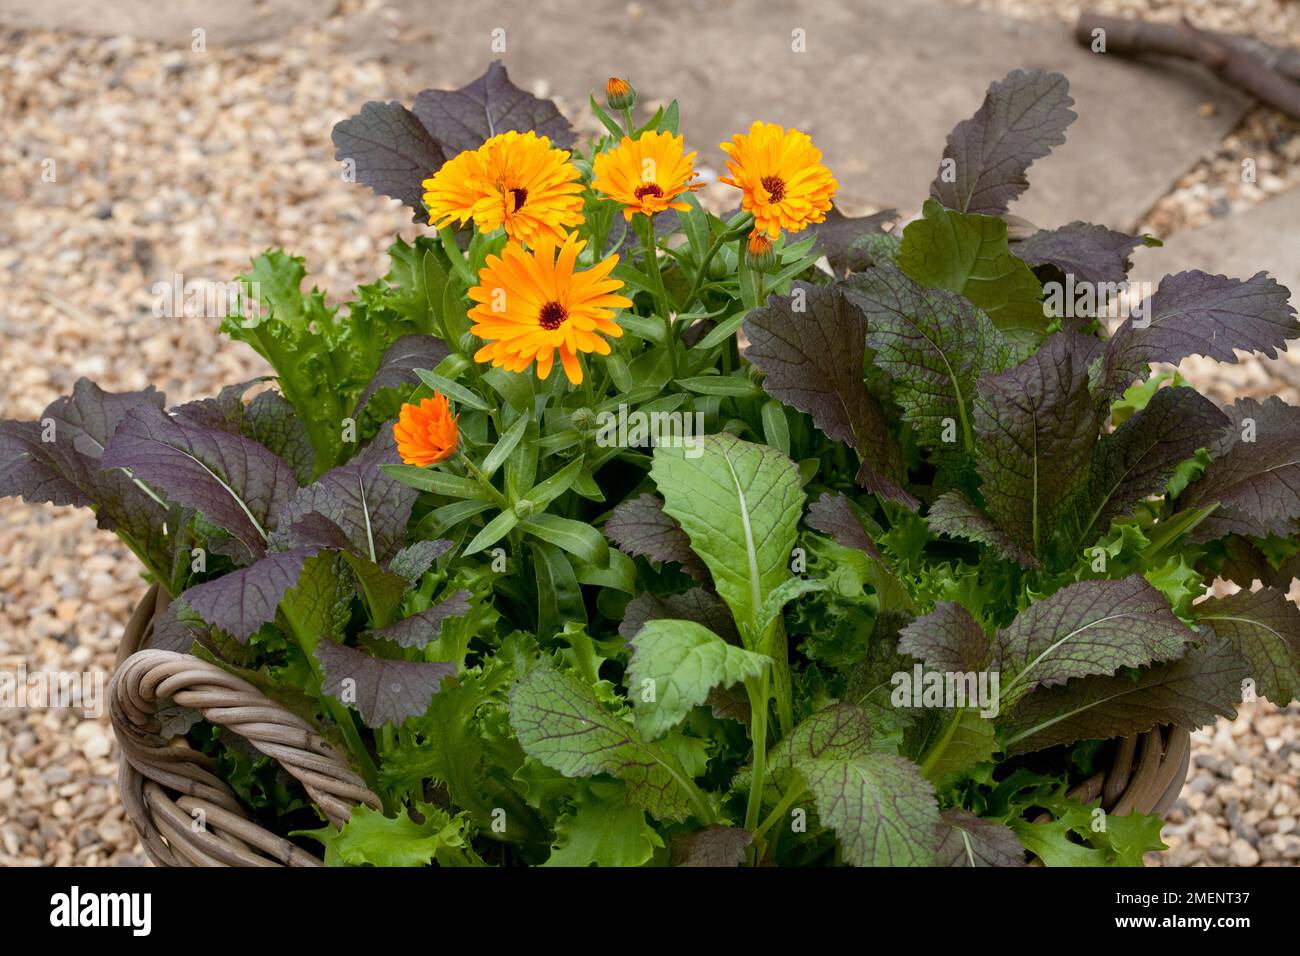 Mélange de laitue et de moutarde et de marigolds en pot d'orange dans un panier tissé dans un jardin de gravier Banque D'Images